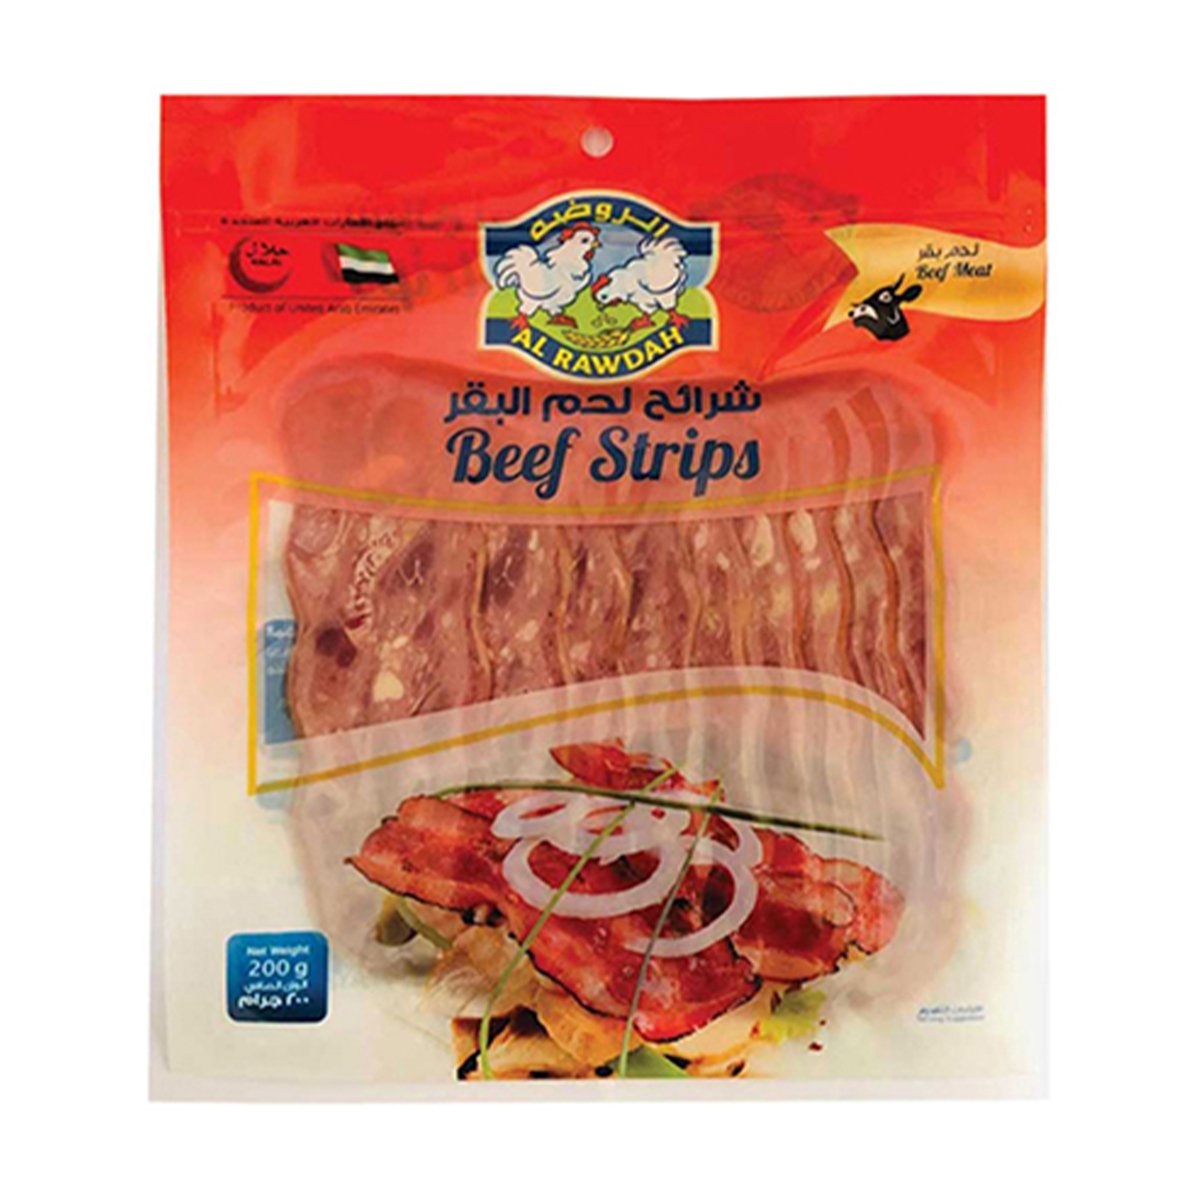 Al Rawdah Beef Strips 200 g